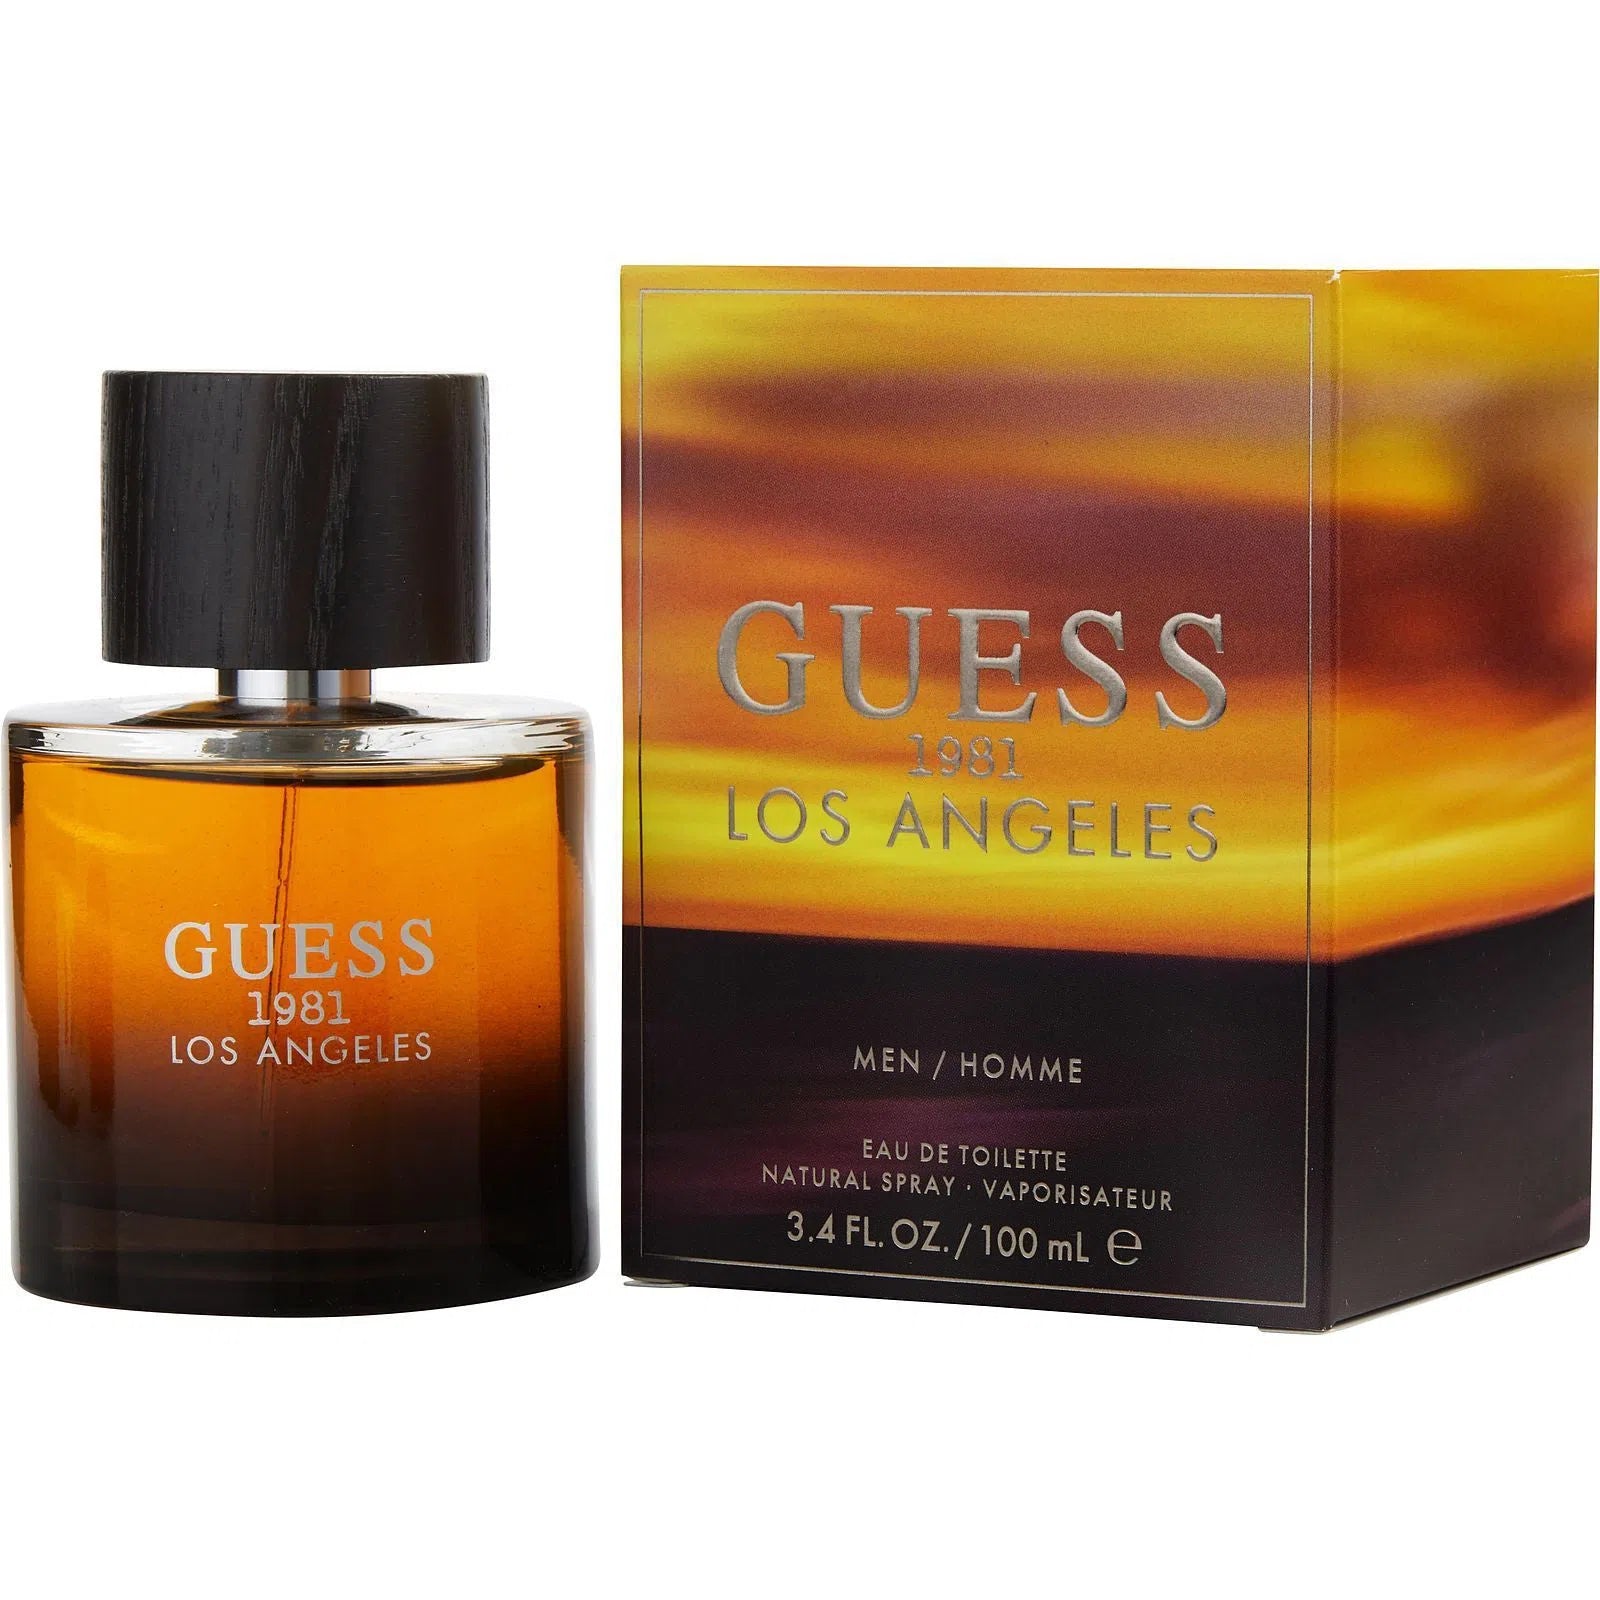 Perfume Guess 1981 Los Angeles EDT (M) / 100 ml - 085715322111- Prive Perfumes Honduras